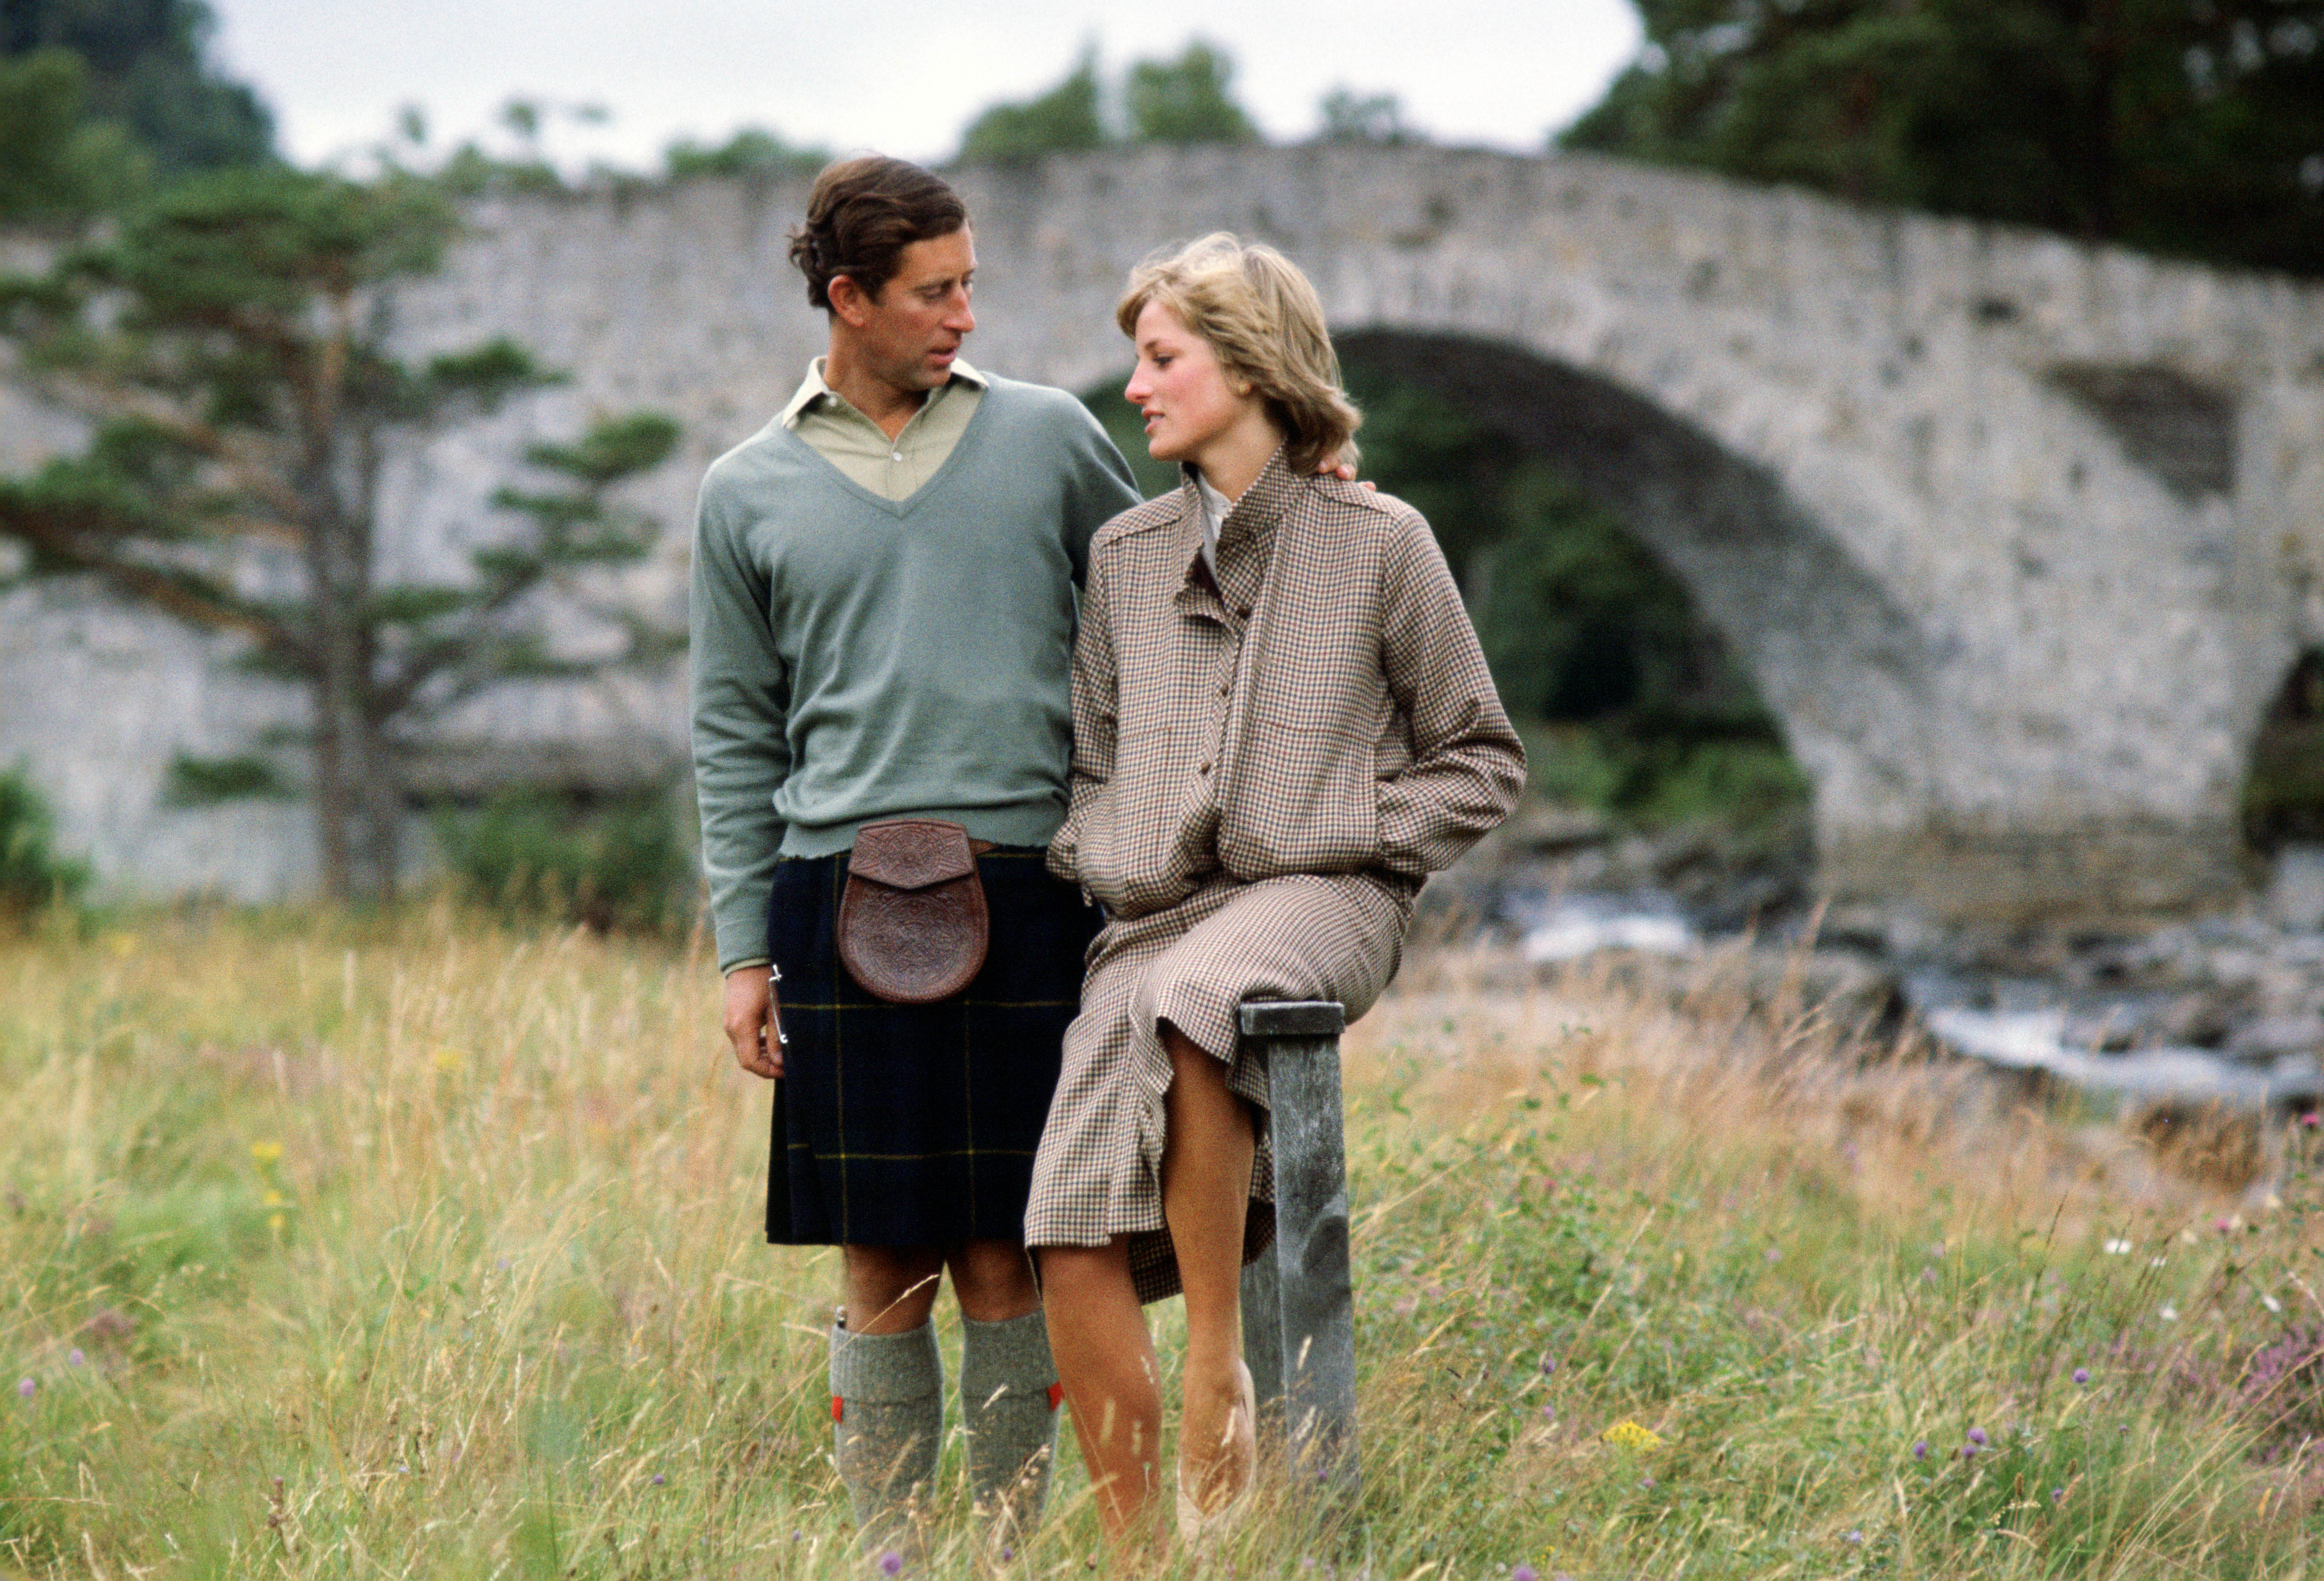 Prinz Charles, Prinz von Wales, mit seinem Arm um seine Frau Prinzessin Diana, Prinzessin von Wales, während ihrer Flitterwochen in Balmoral in Schottland. | Quelle: Getty Images